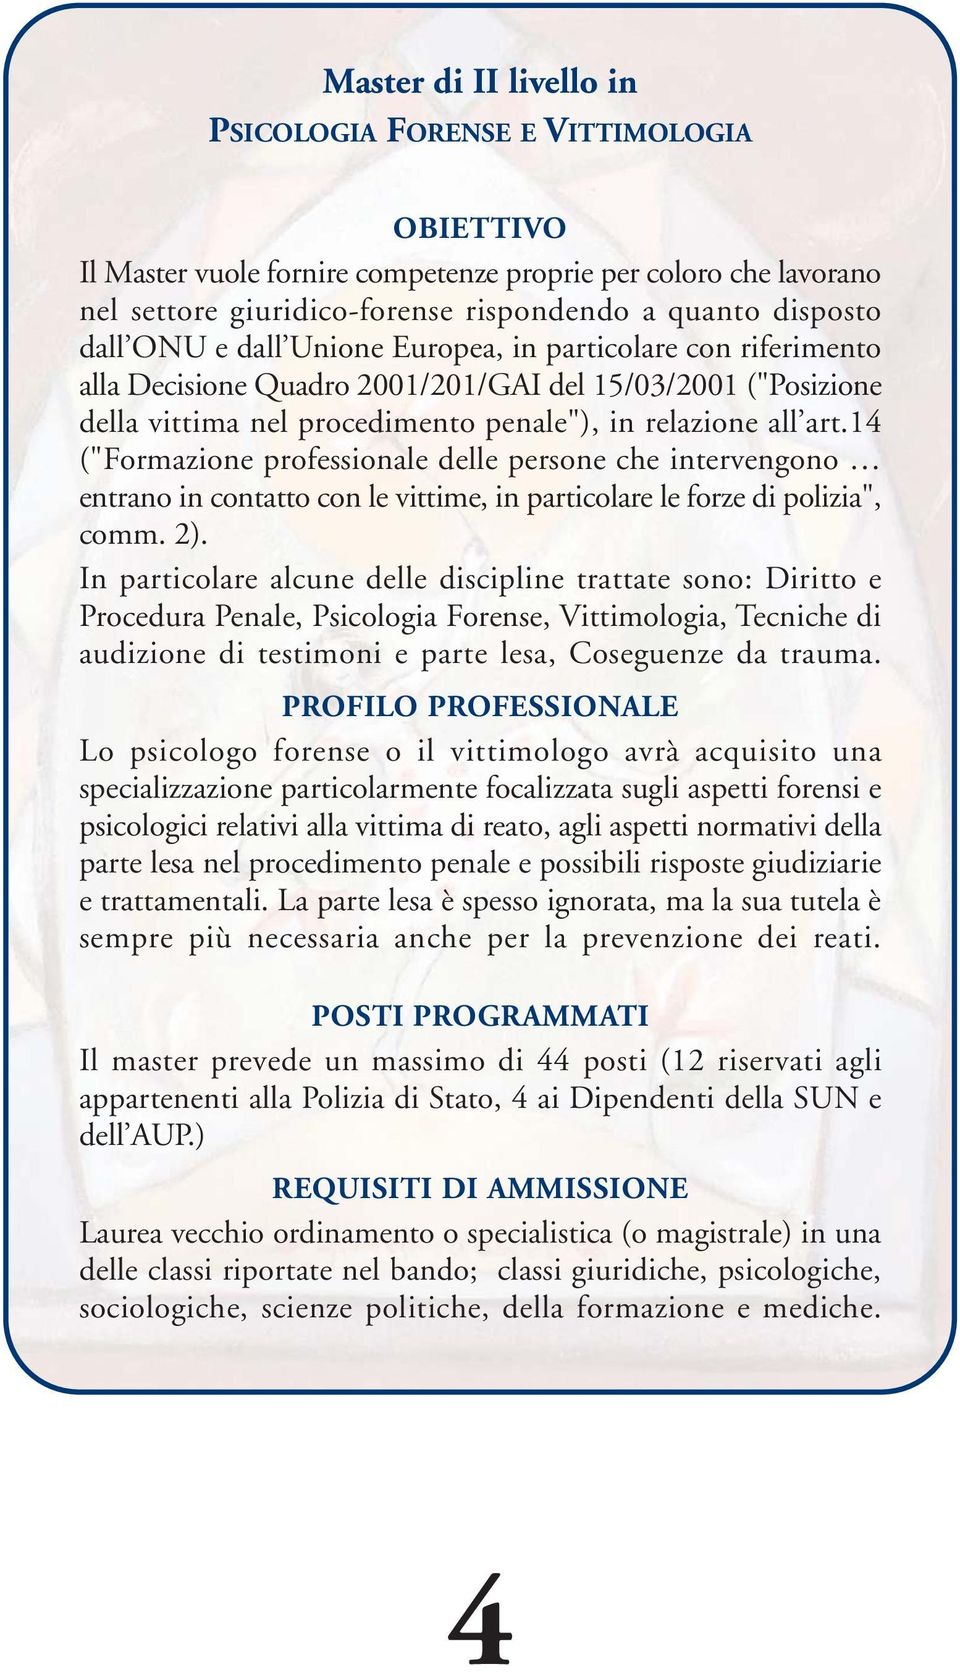 14 ("Formazione professionale delle persone che intervengono entrano in contatto con le vittime, in particolare le forze di polizia", comm. 2).